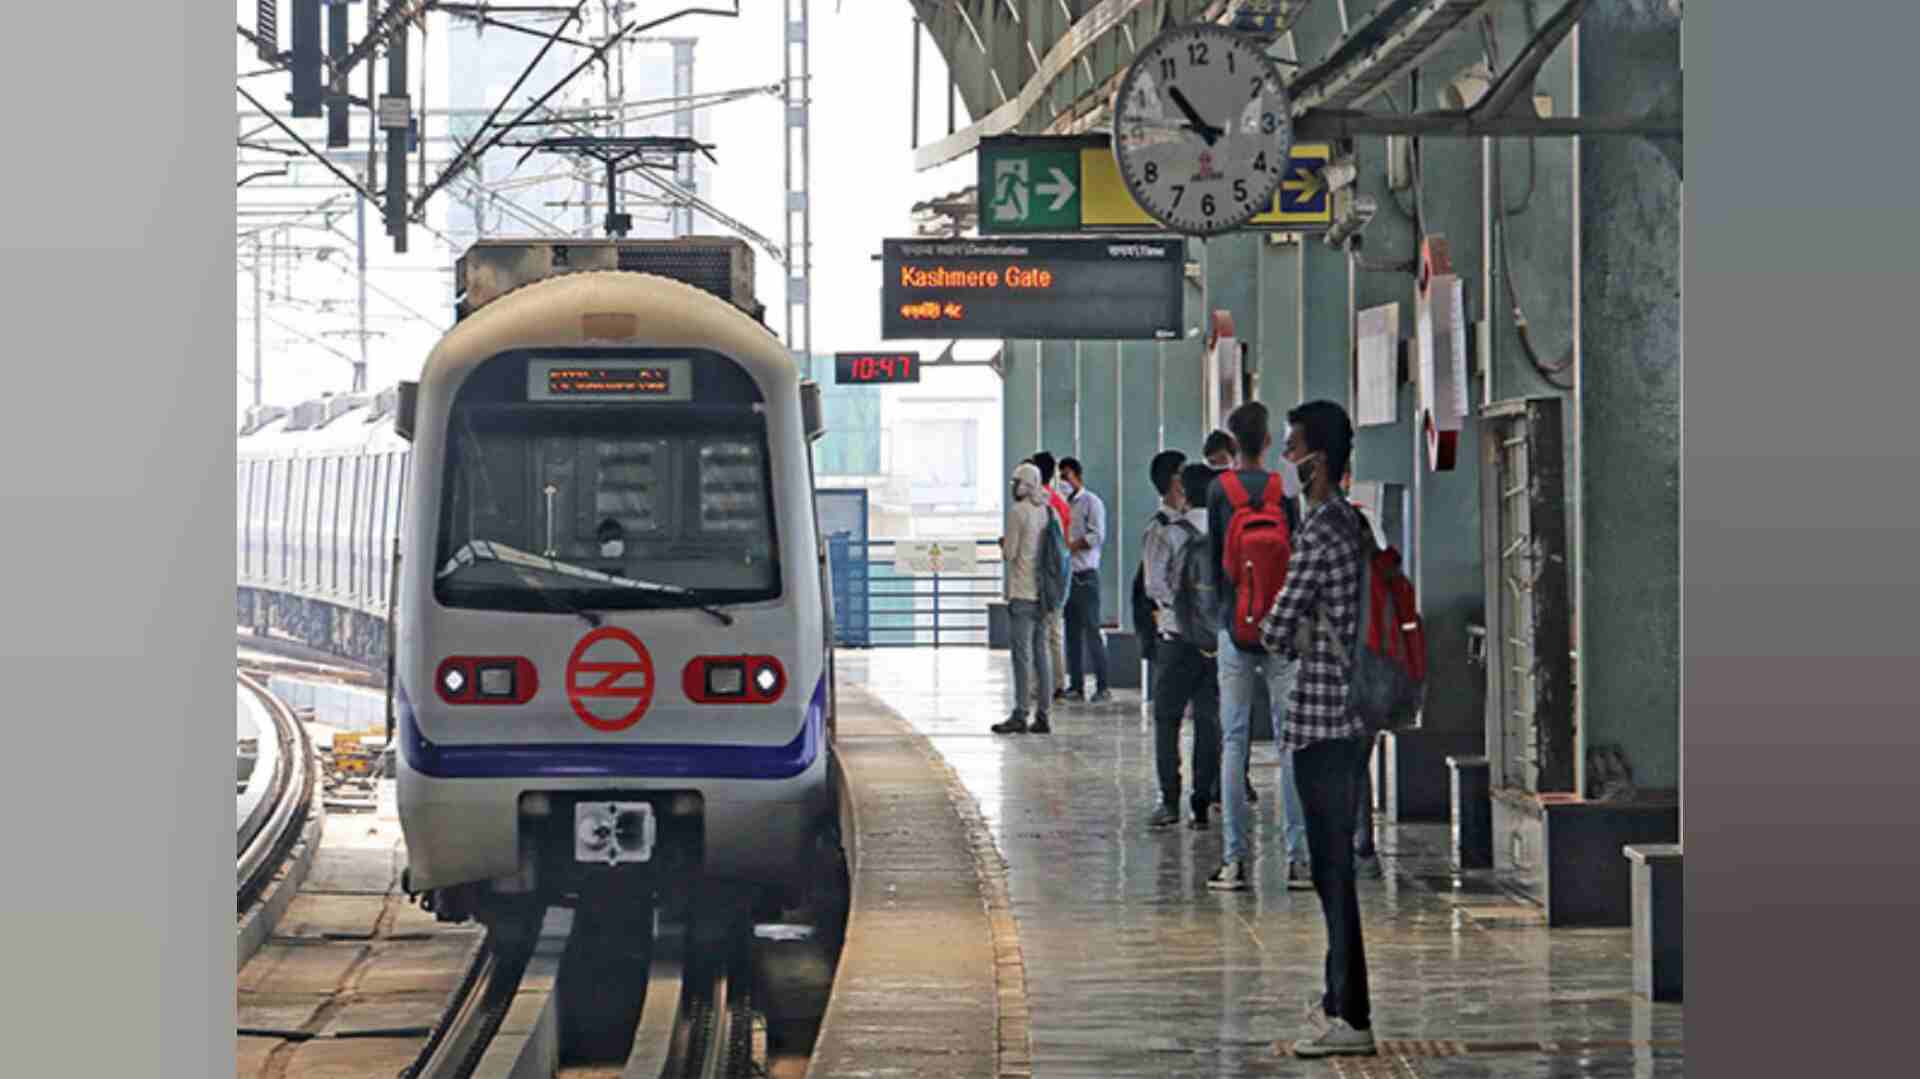 दिल्ली: मेट्रो के दरवाज़े के बीच कपड़ा फंसने से ट्रेन के नीचे आई महिला, हुई मौत